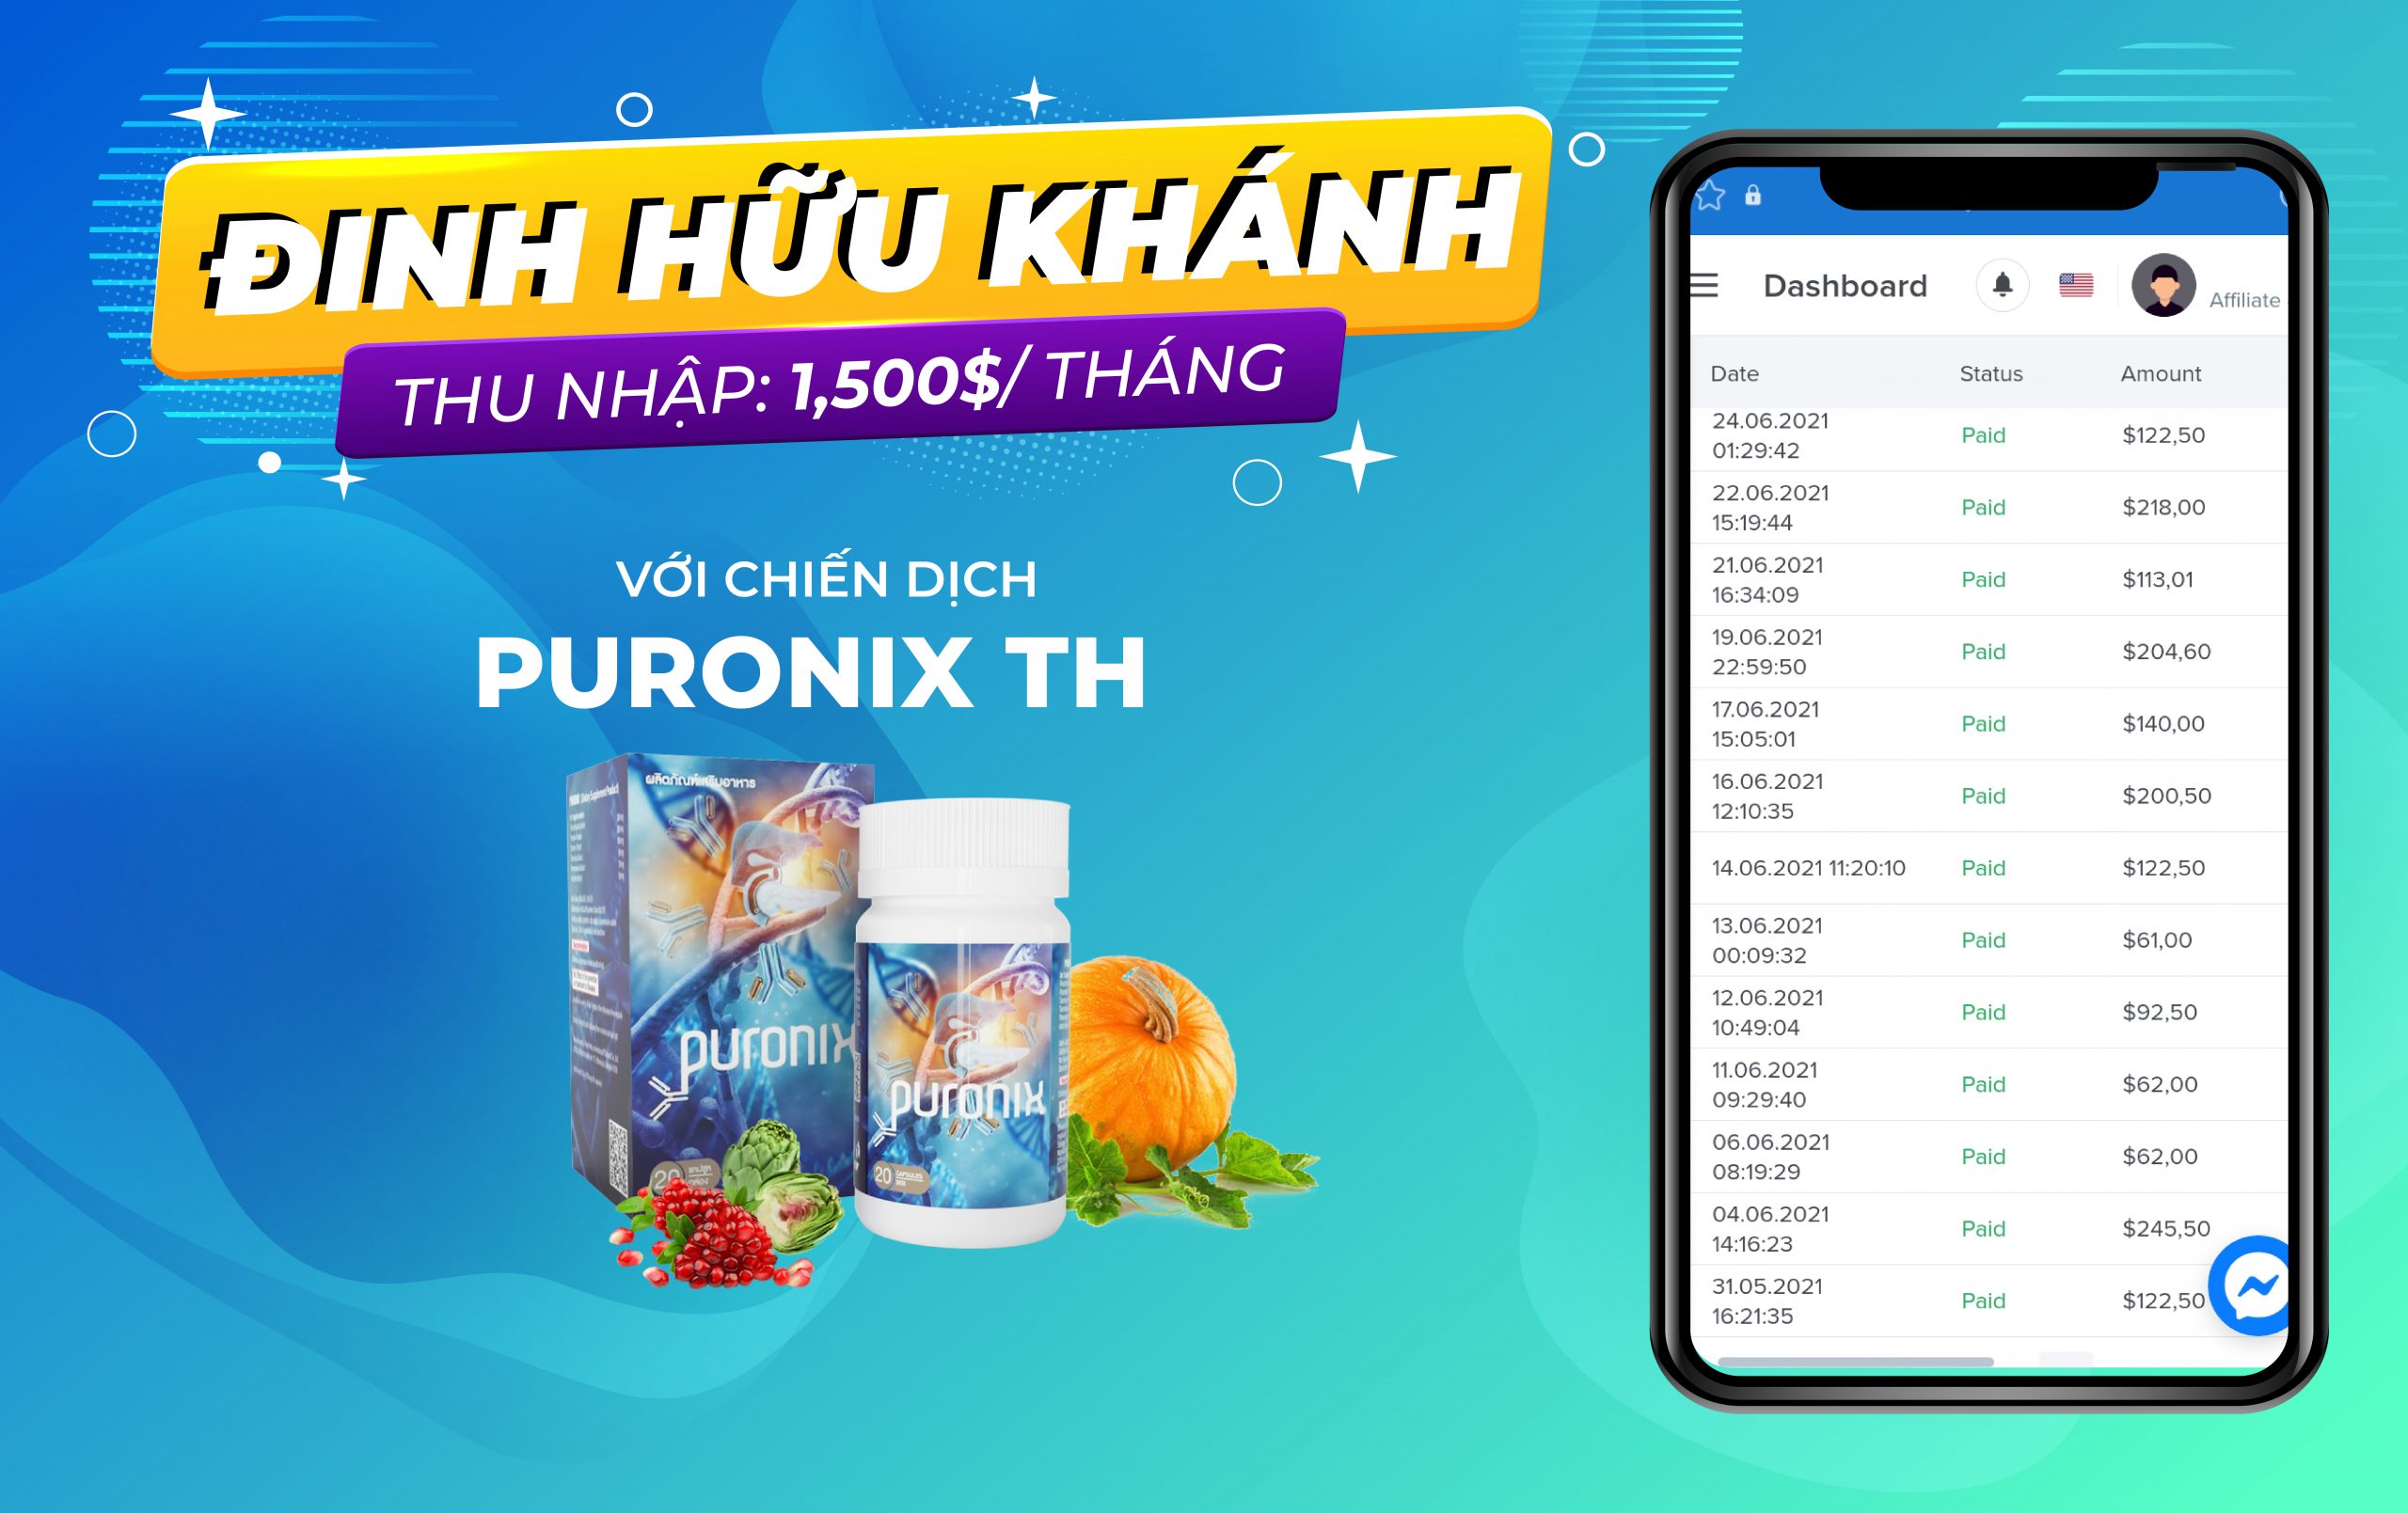 Kiếm 1,500$/tháng với chiến dịch Affiliate Marketing PURONIX thị trường Thái